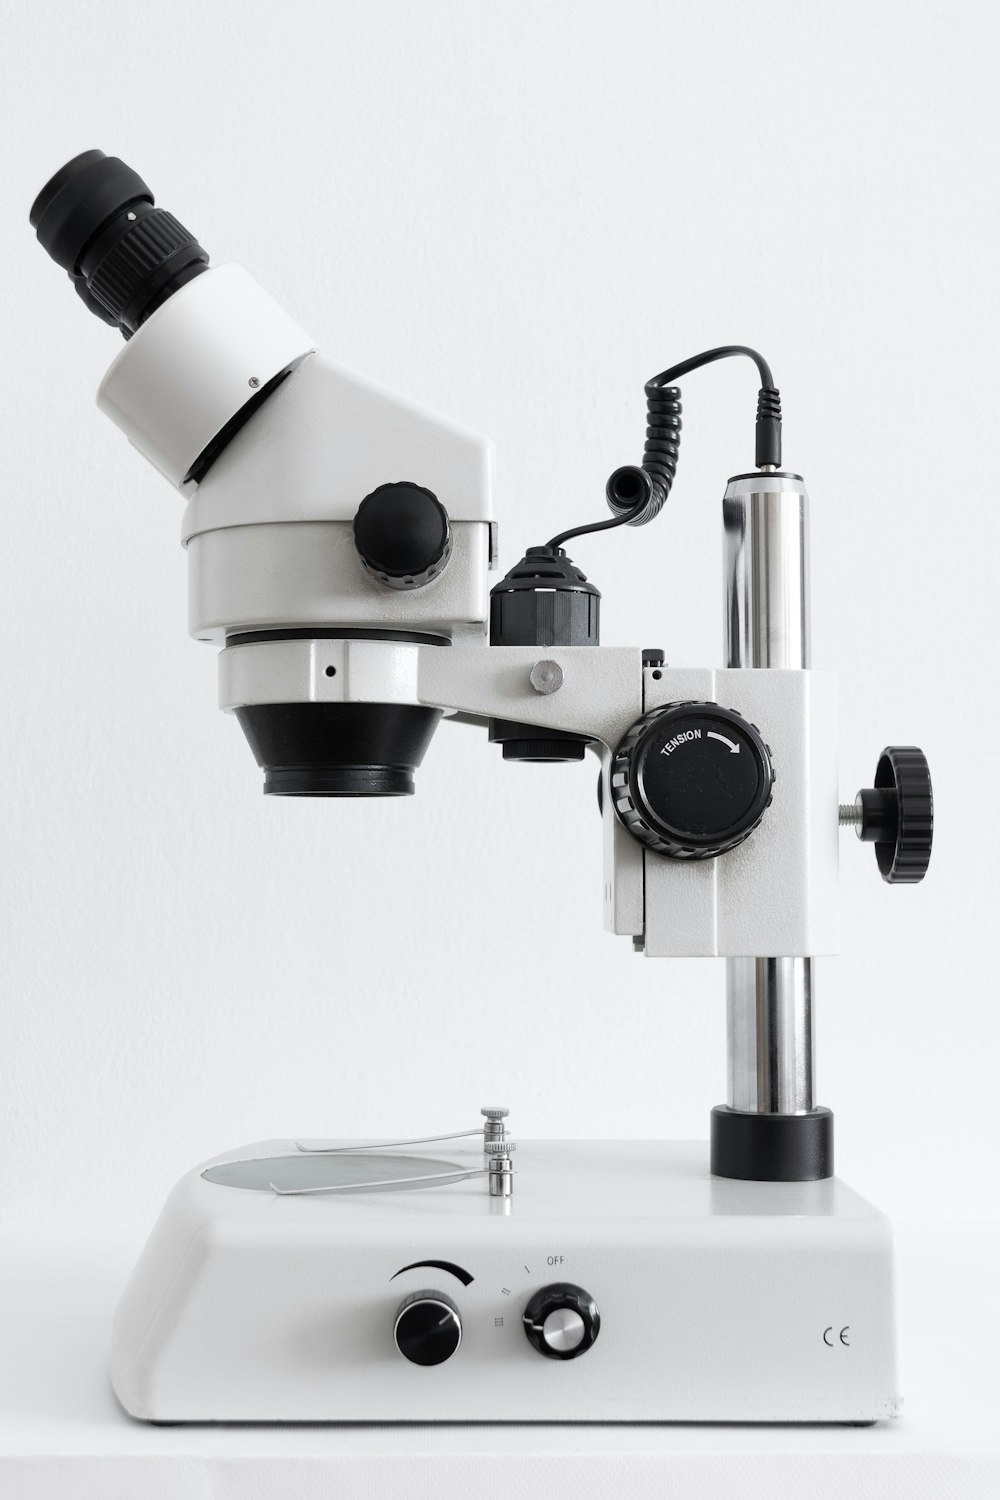 microscopio bianco e nero su superficie bianca